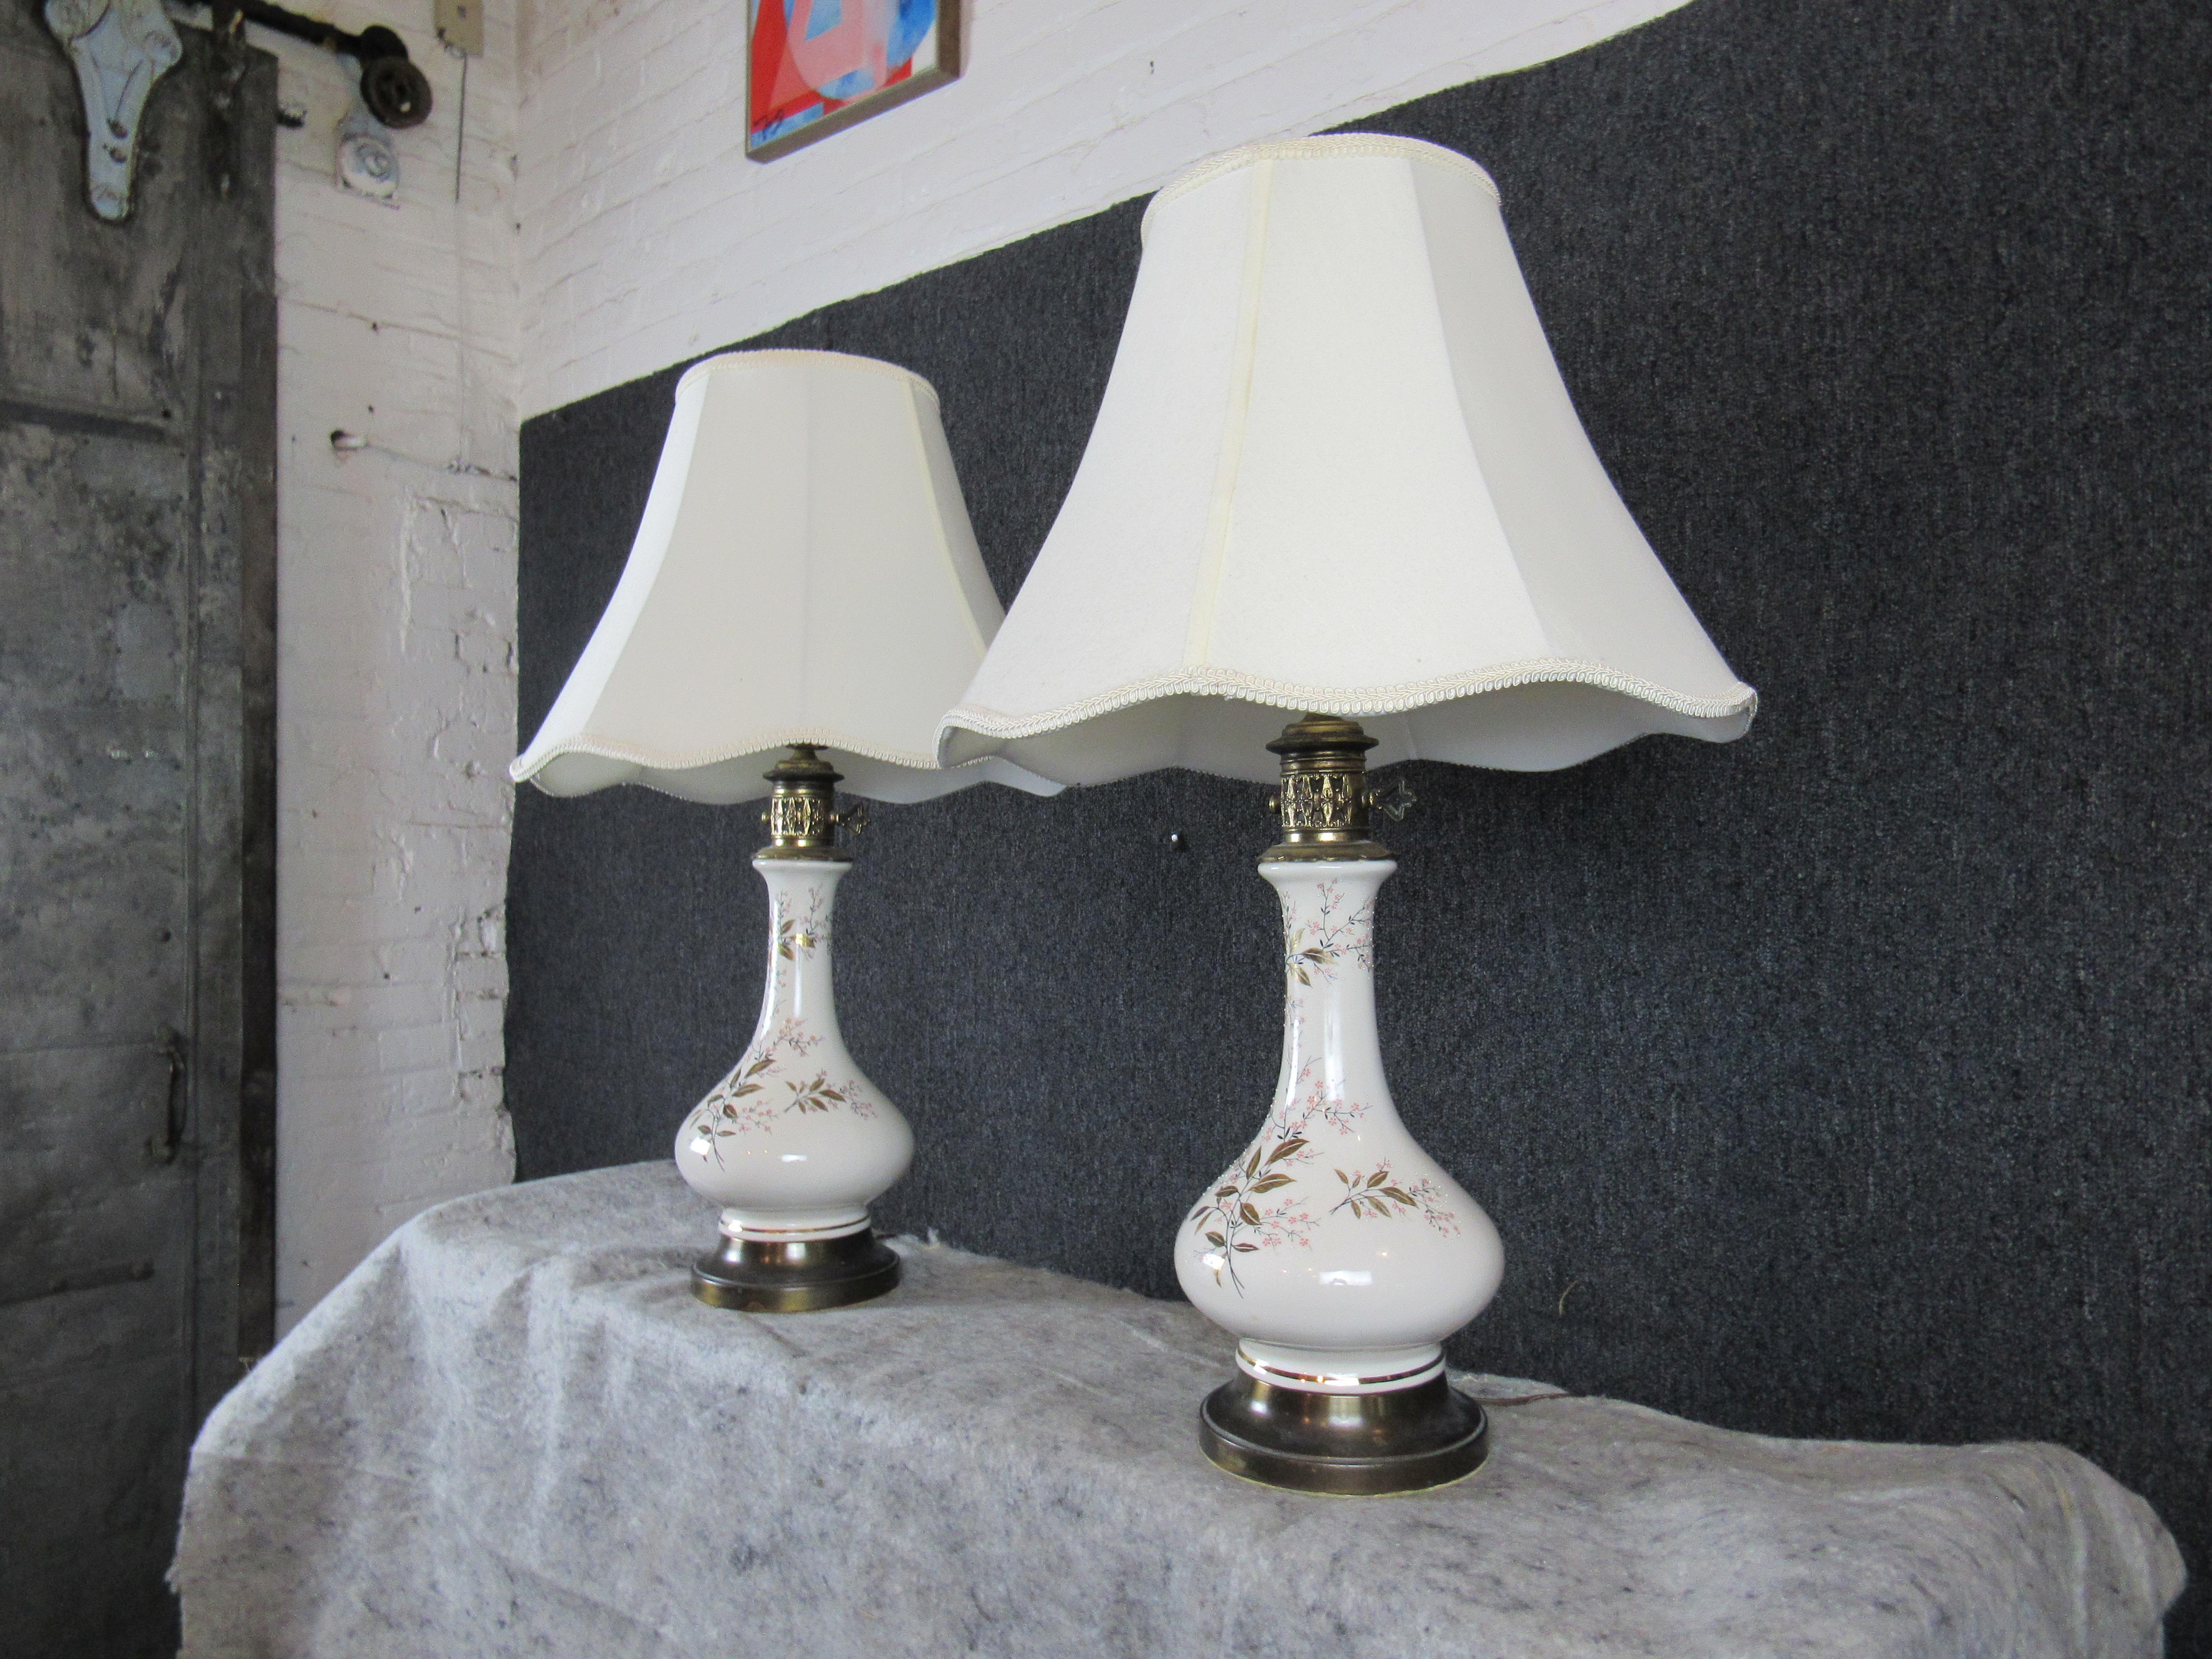 Hübsches Paar Vintage-Genie-Lampen mit unendlichem Charme! Eine hübsche Keramikvase ist mit einem gemalten Kirschblütenmotiv verziert, während Messingakzente einen Hauch von altmodischer Eleganz verleihen. Die bauschigen Stoffschirme verleihen jedem